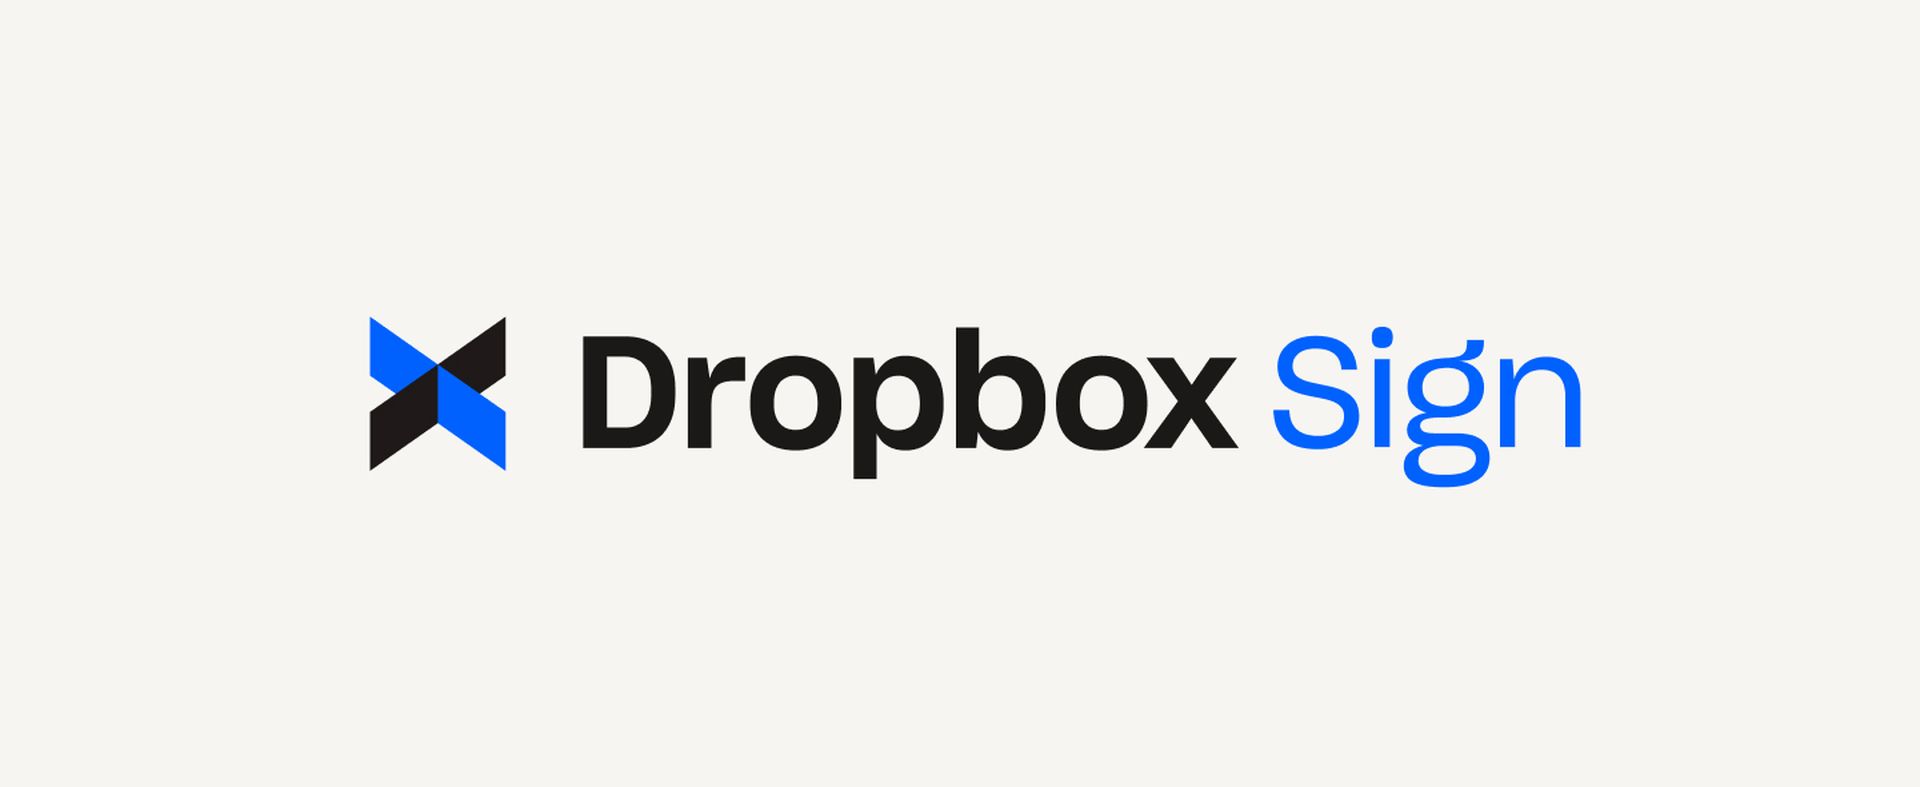 Dropbox Sign 攻撃: データ セキュリティとその影響についての詳細